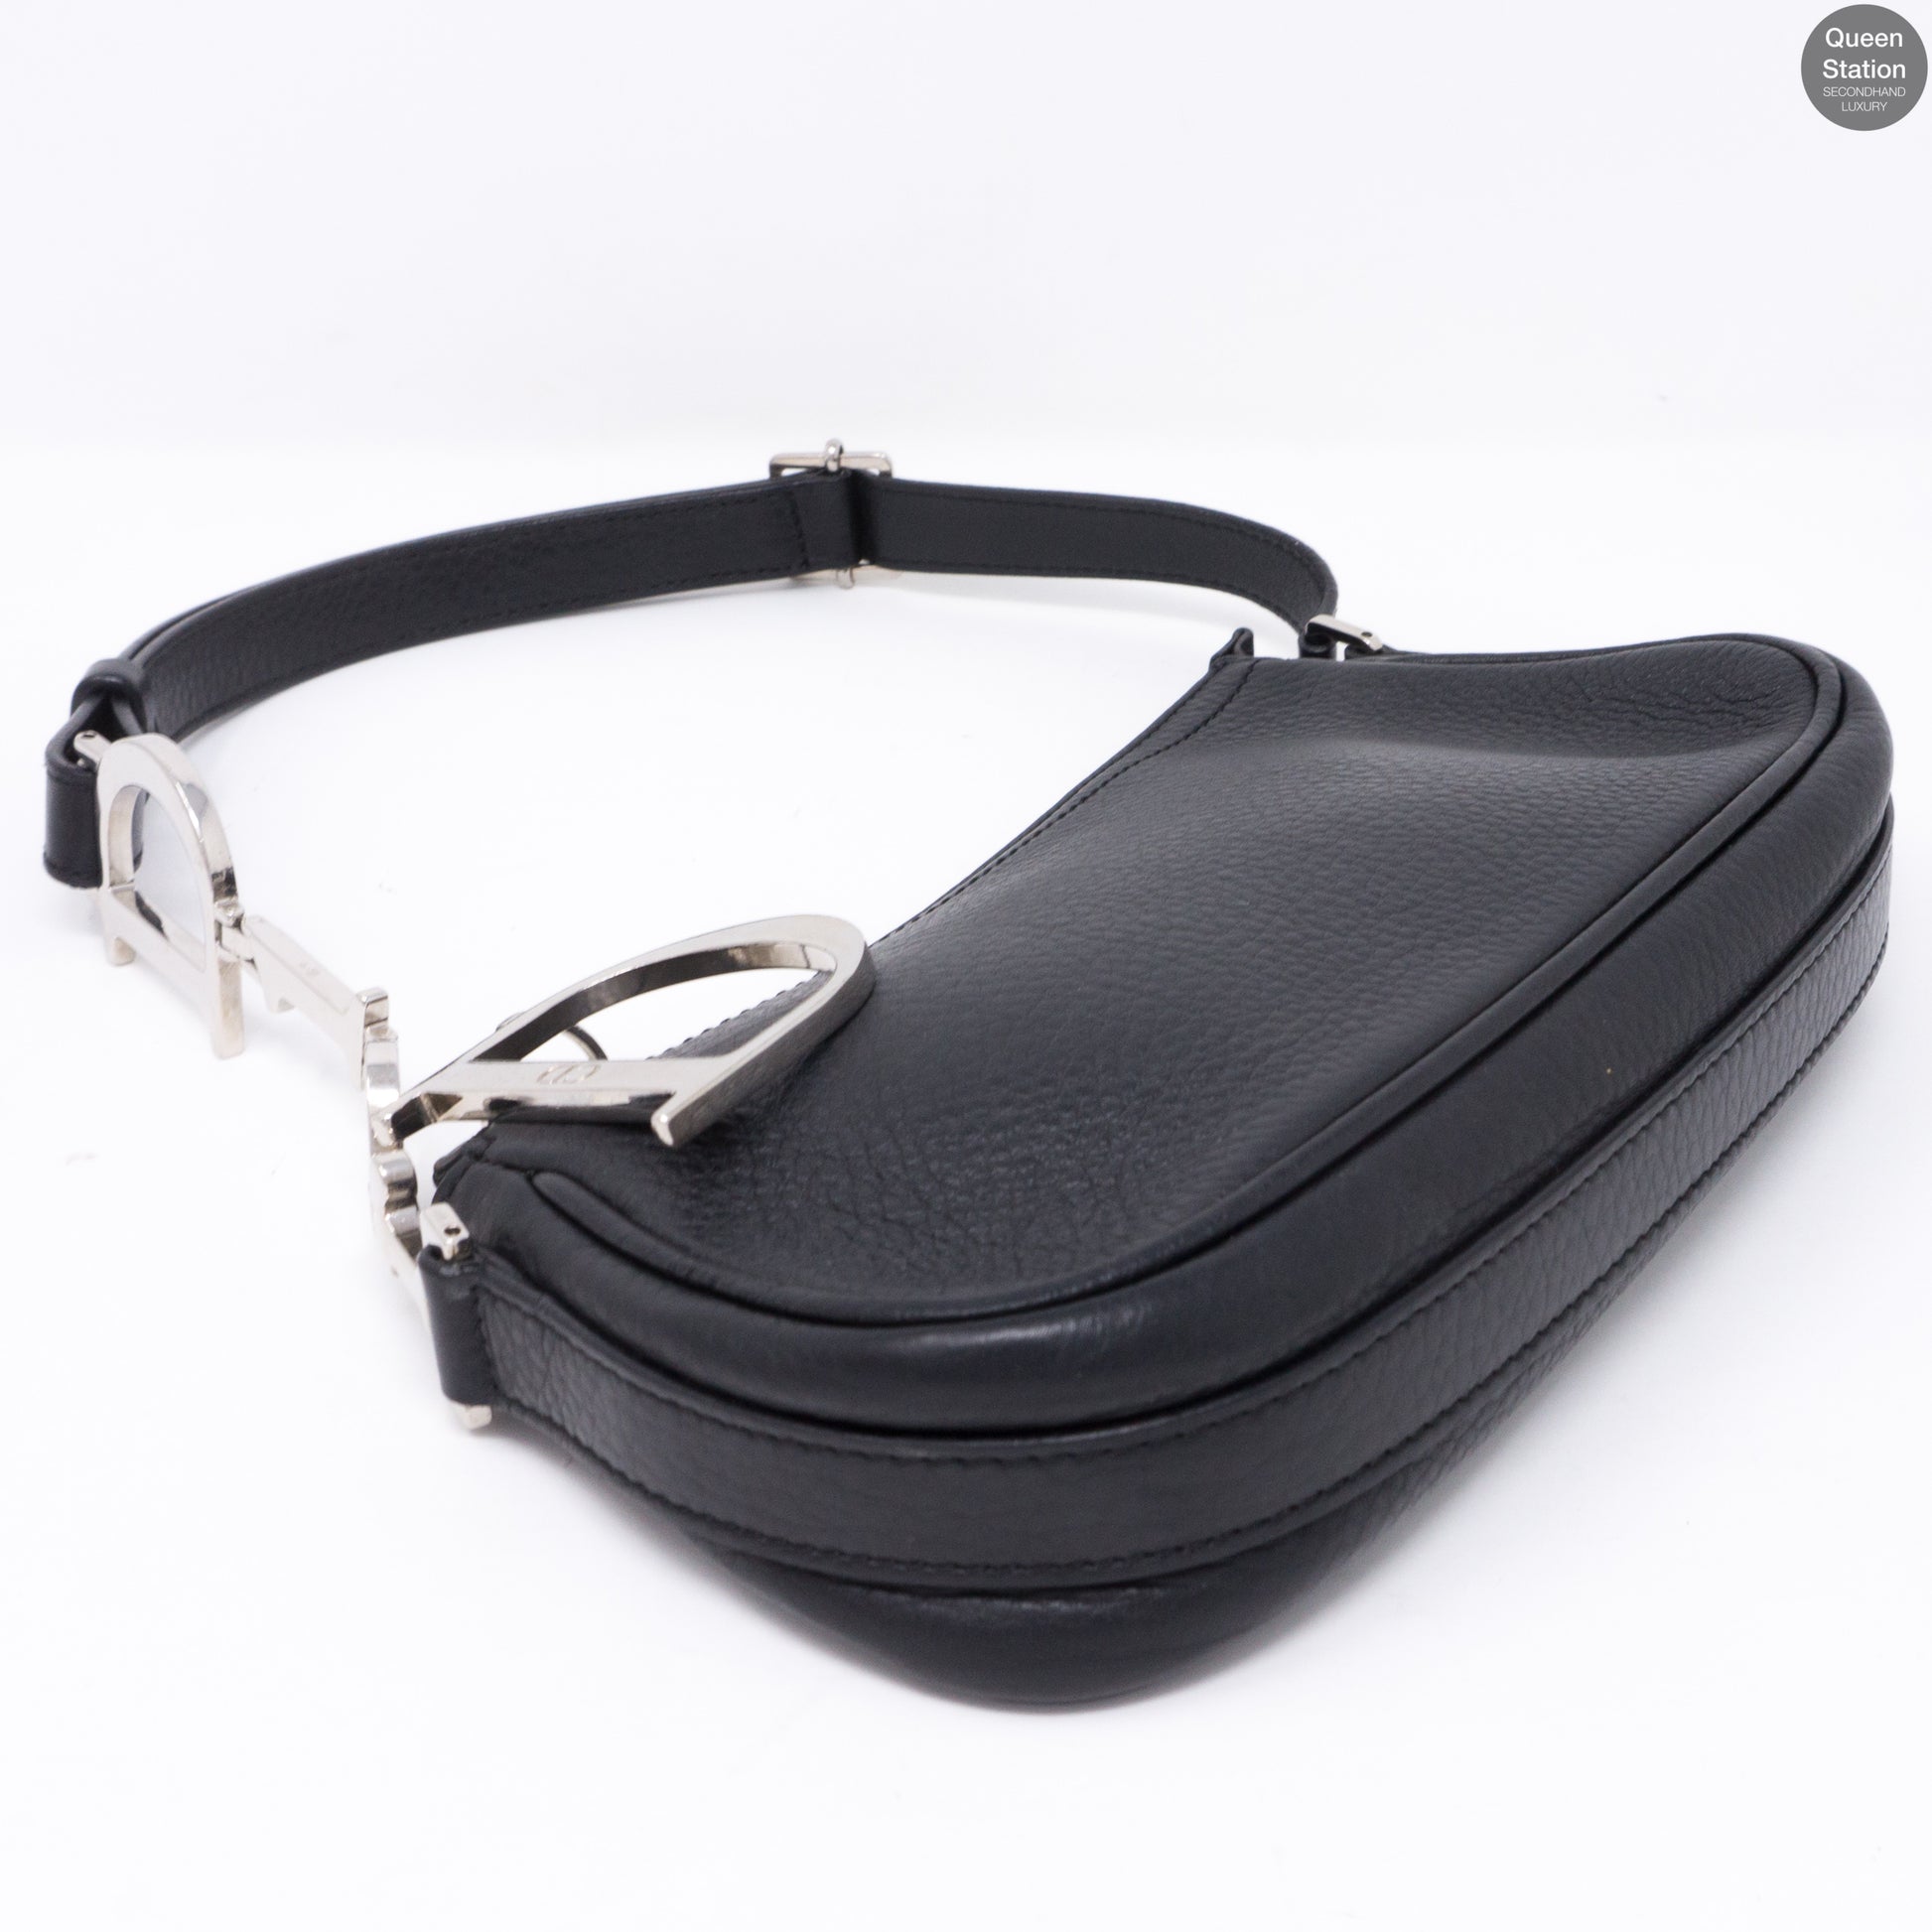 Christian Dior Diorissimo Charms Pochette - Black Mini Bags